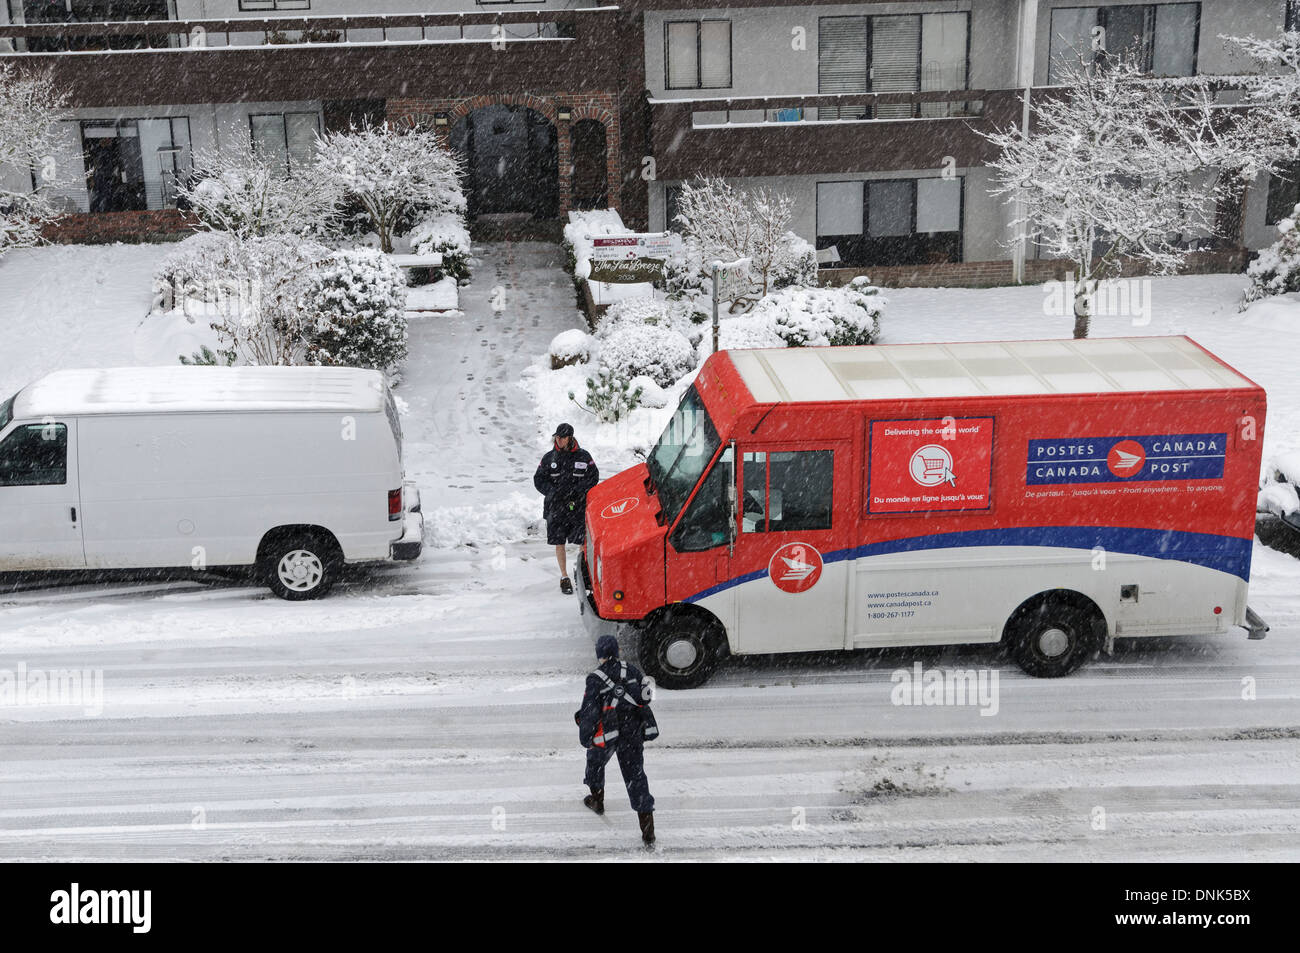 La livraison du courrier sur un jour neigeux Vancouver. Un transporteur lettre parle brièvement à un autre travailleur de Postes Canada dans un camion de livraison. Banque D'Images